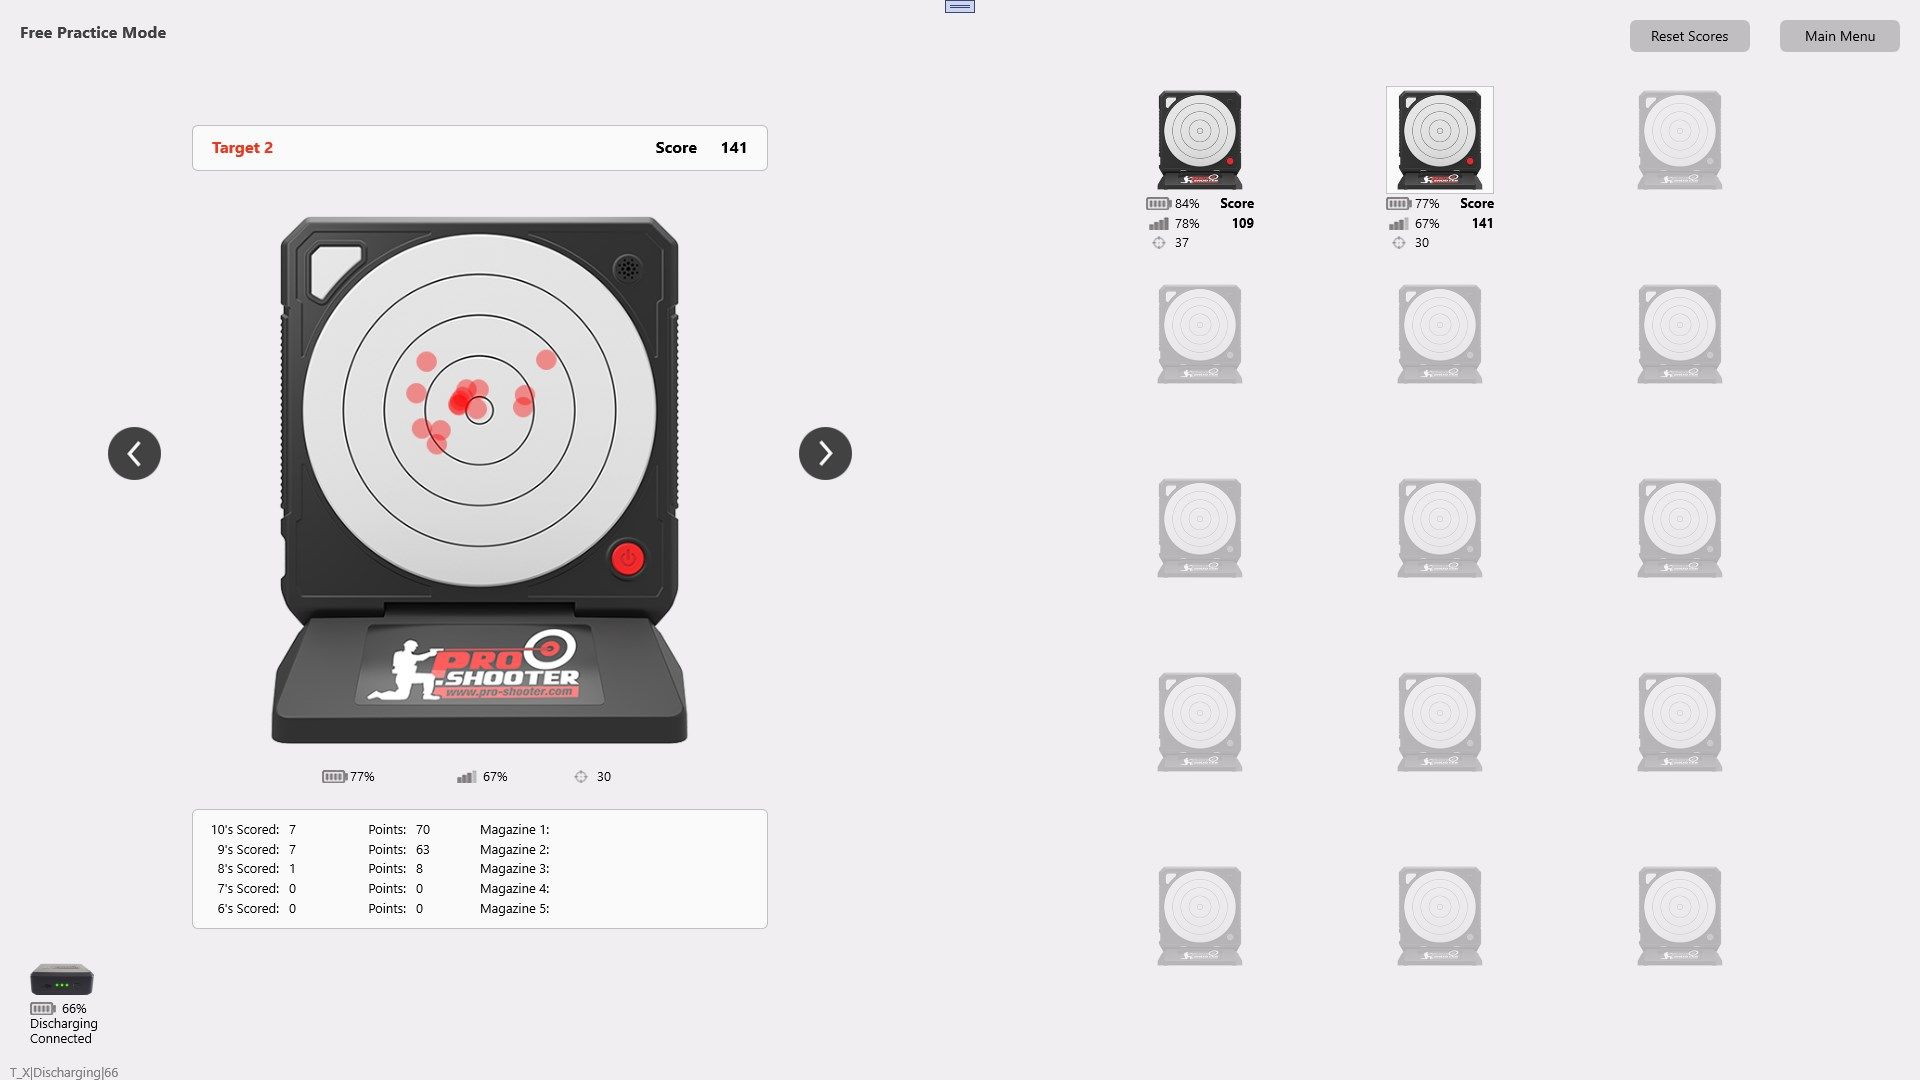 Pro-Shooter - Smart Target System